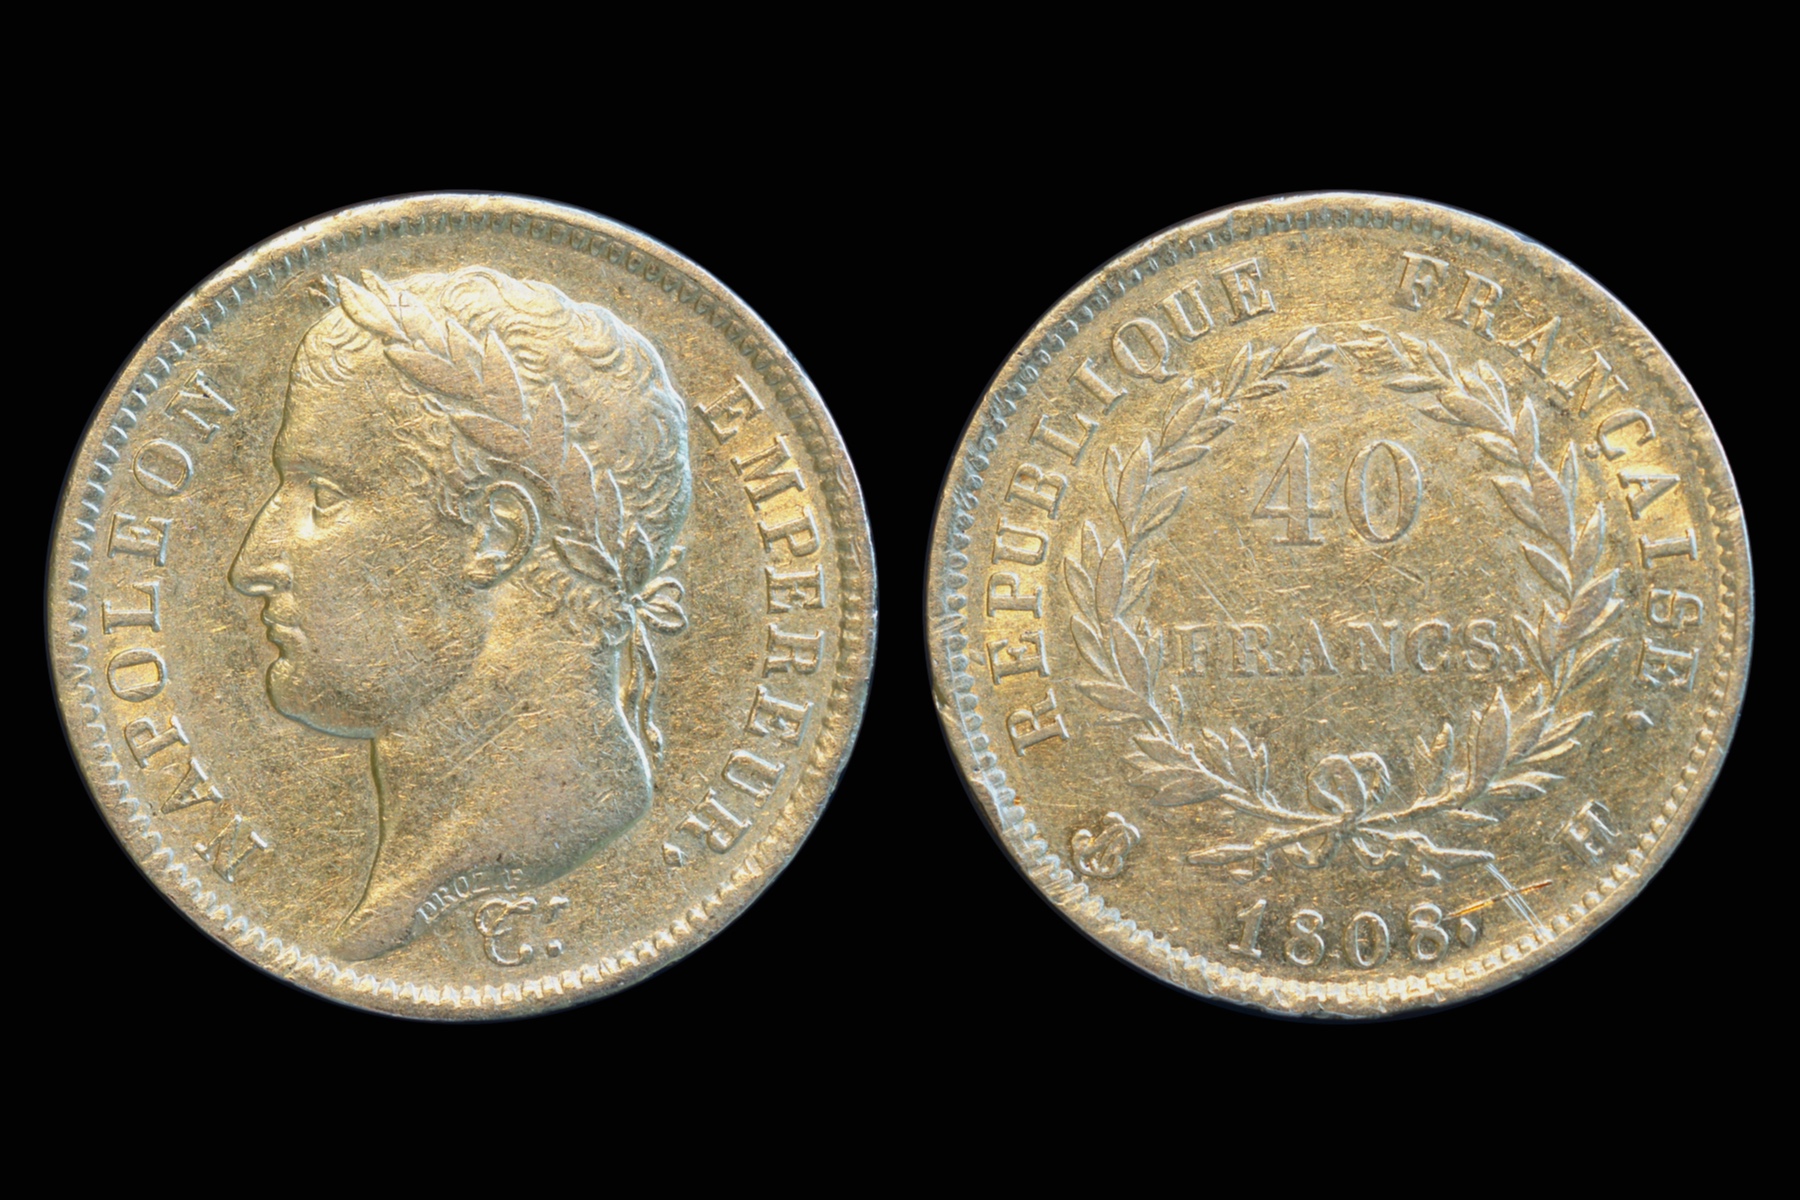 France 1808 40 Franc.jpg